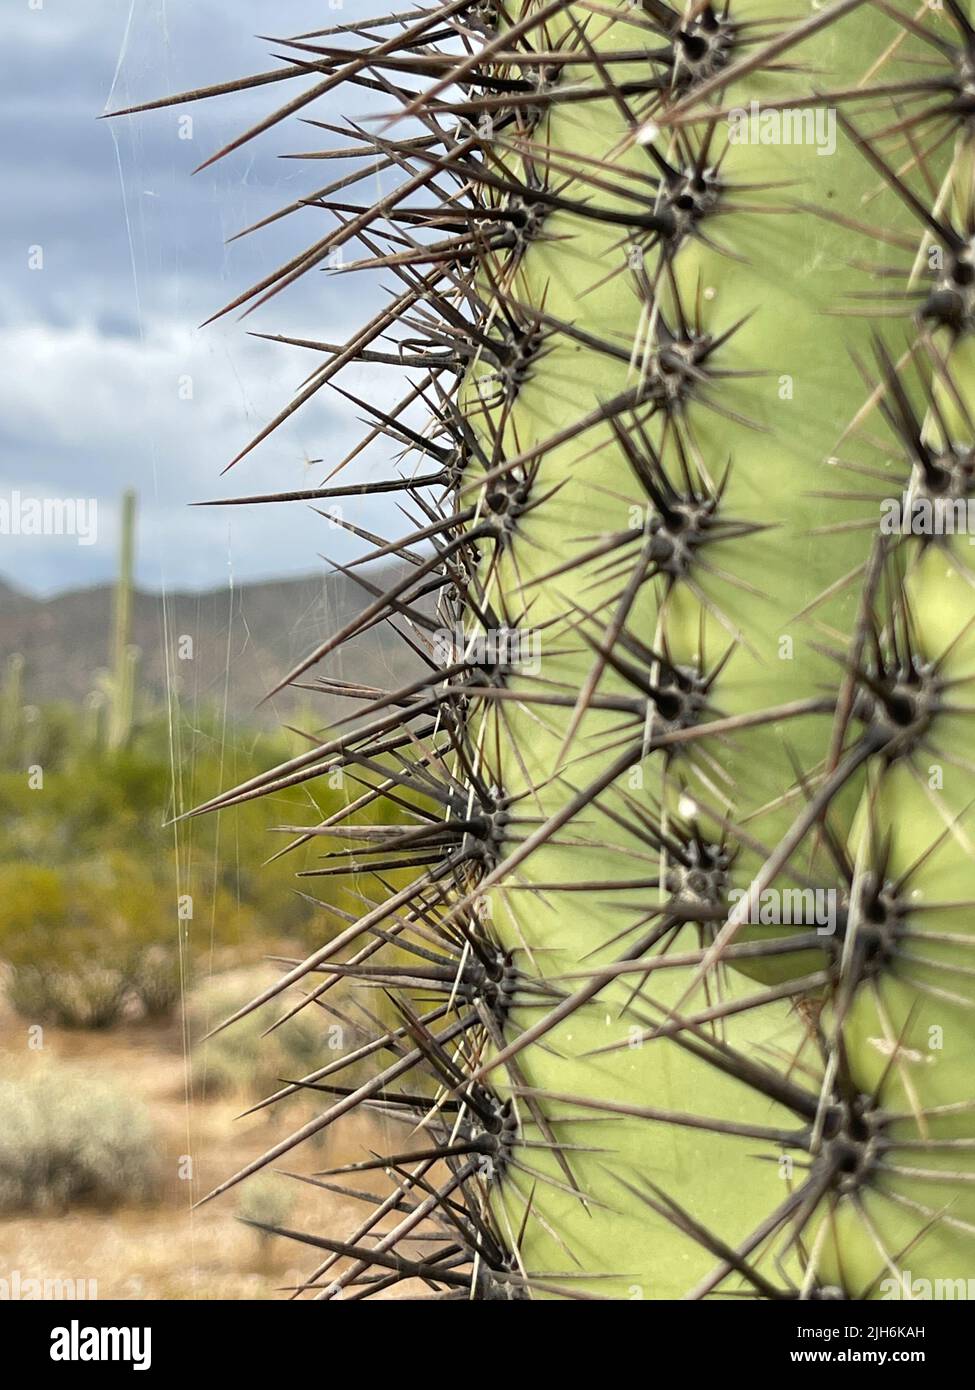 Closeup Saguaro Cactus with spider web Stock Photo